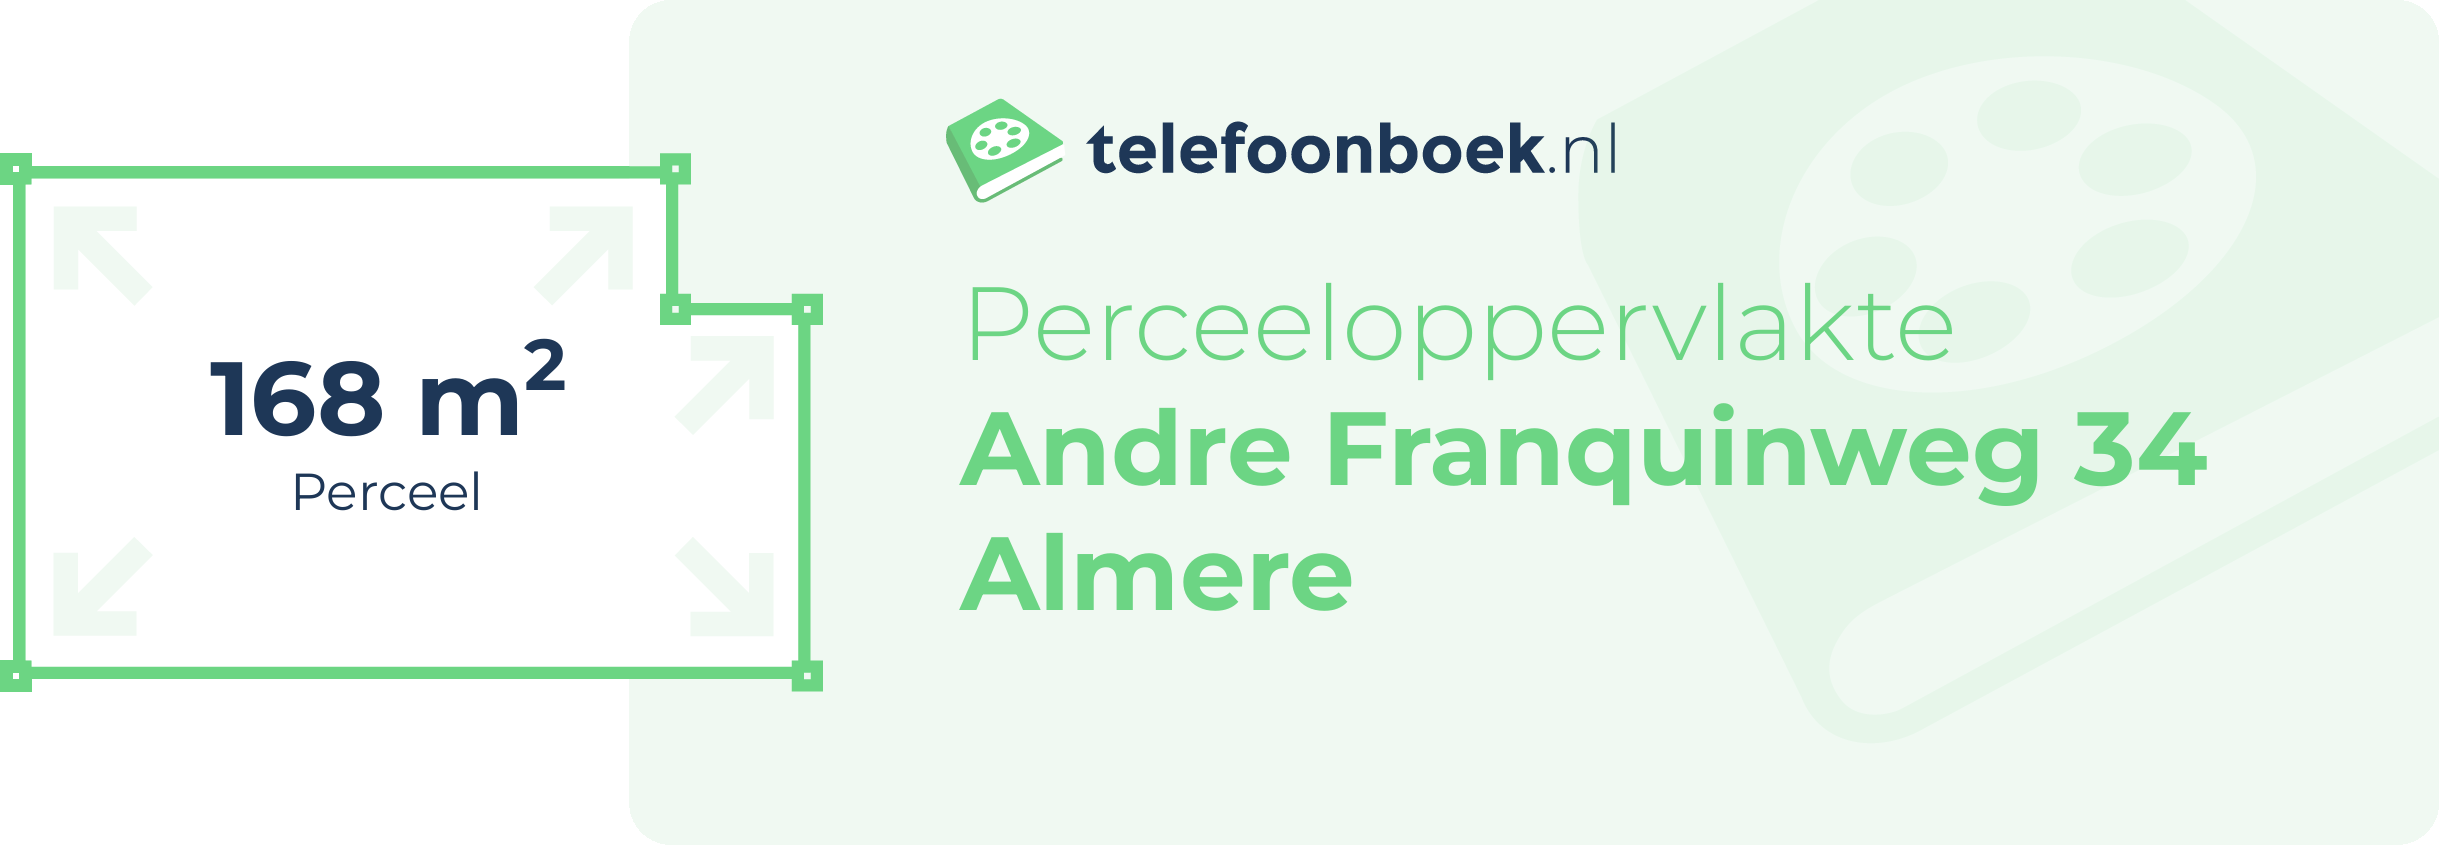 Perceeloppervlakte Andre Franquinweg 34 Almere